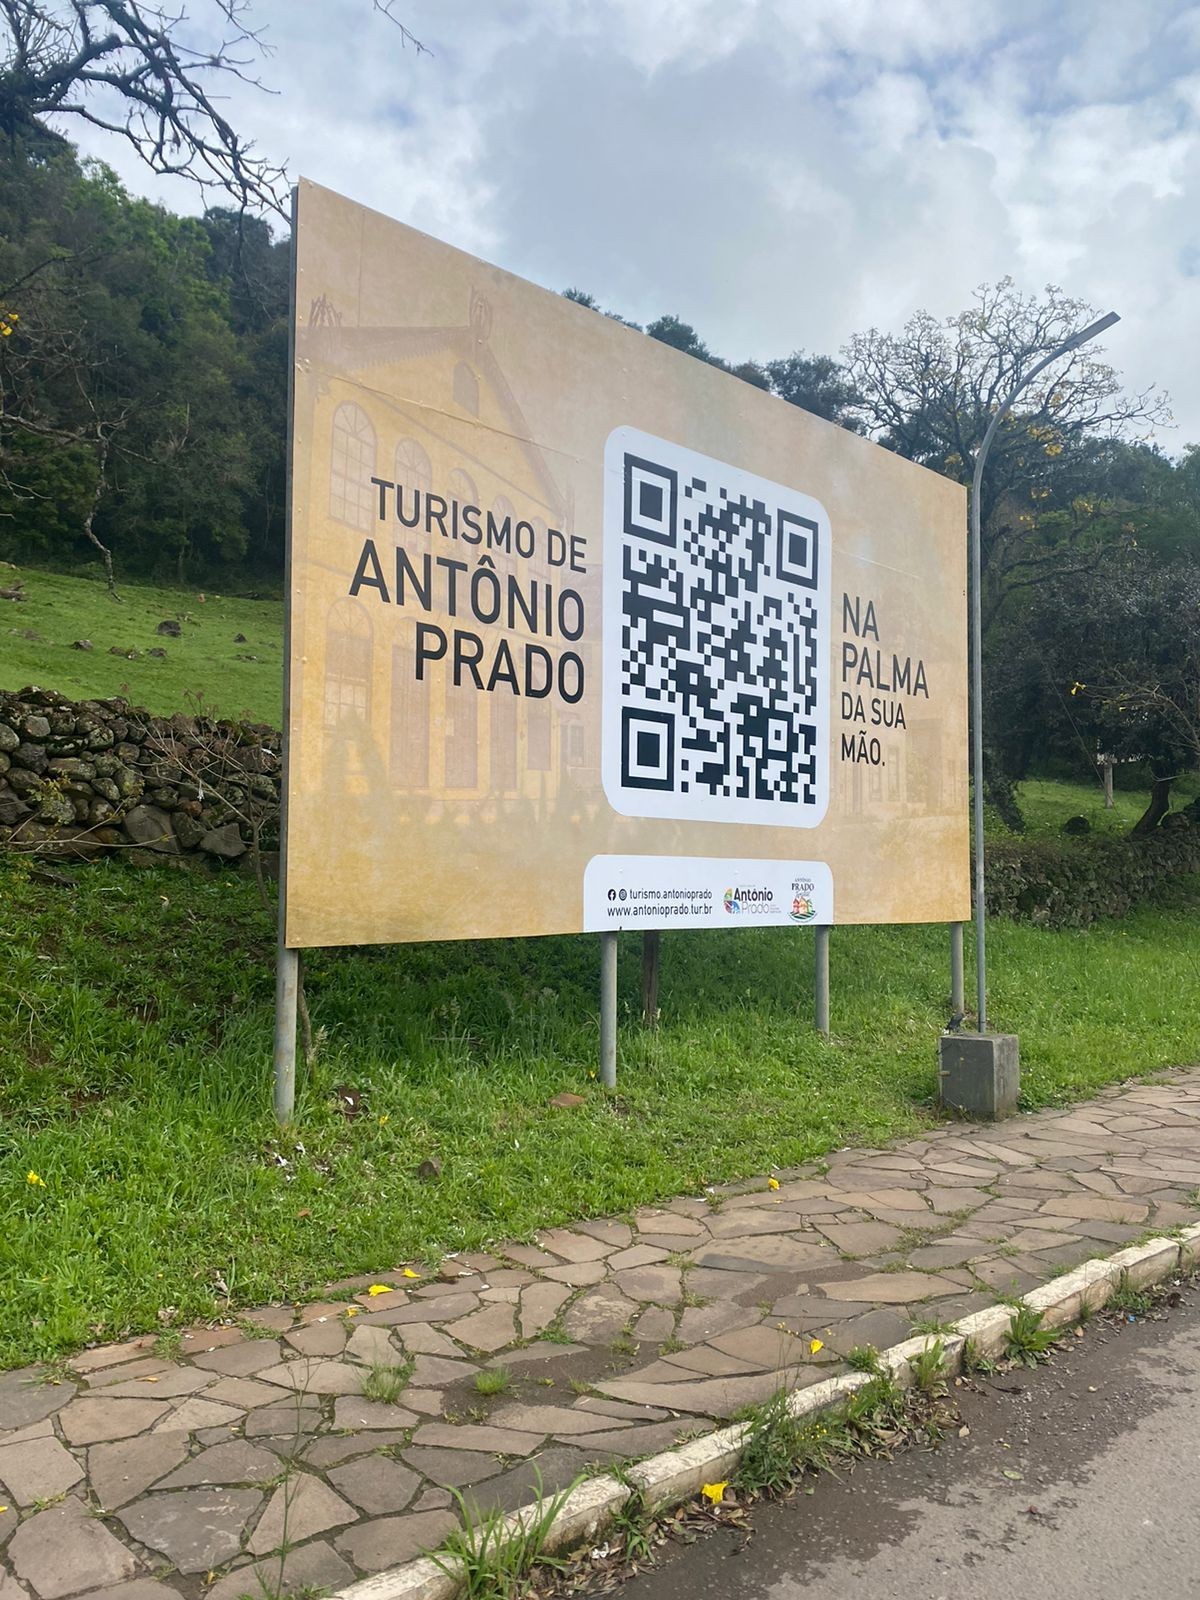 Turismo de Antônio Prado na Palma da sua Mão